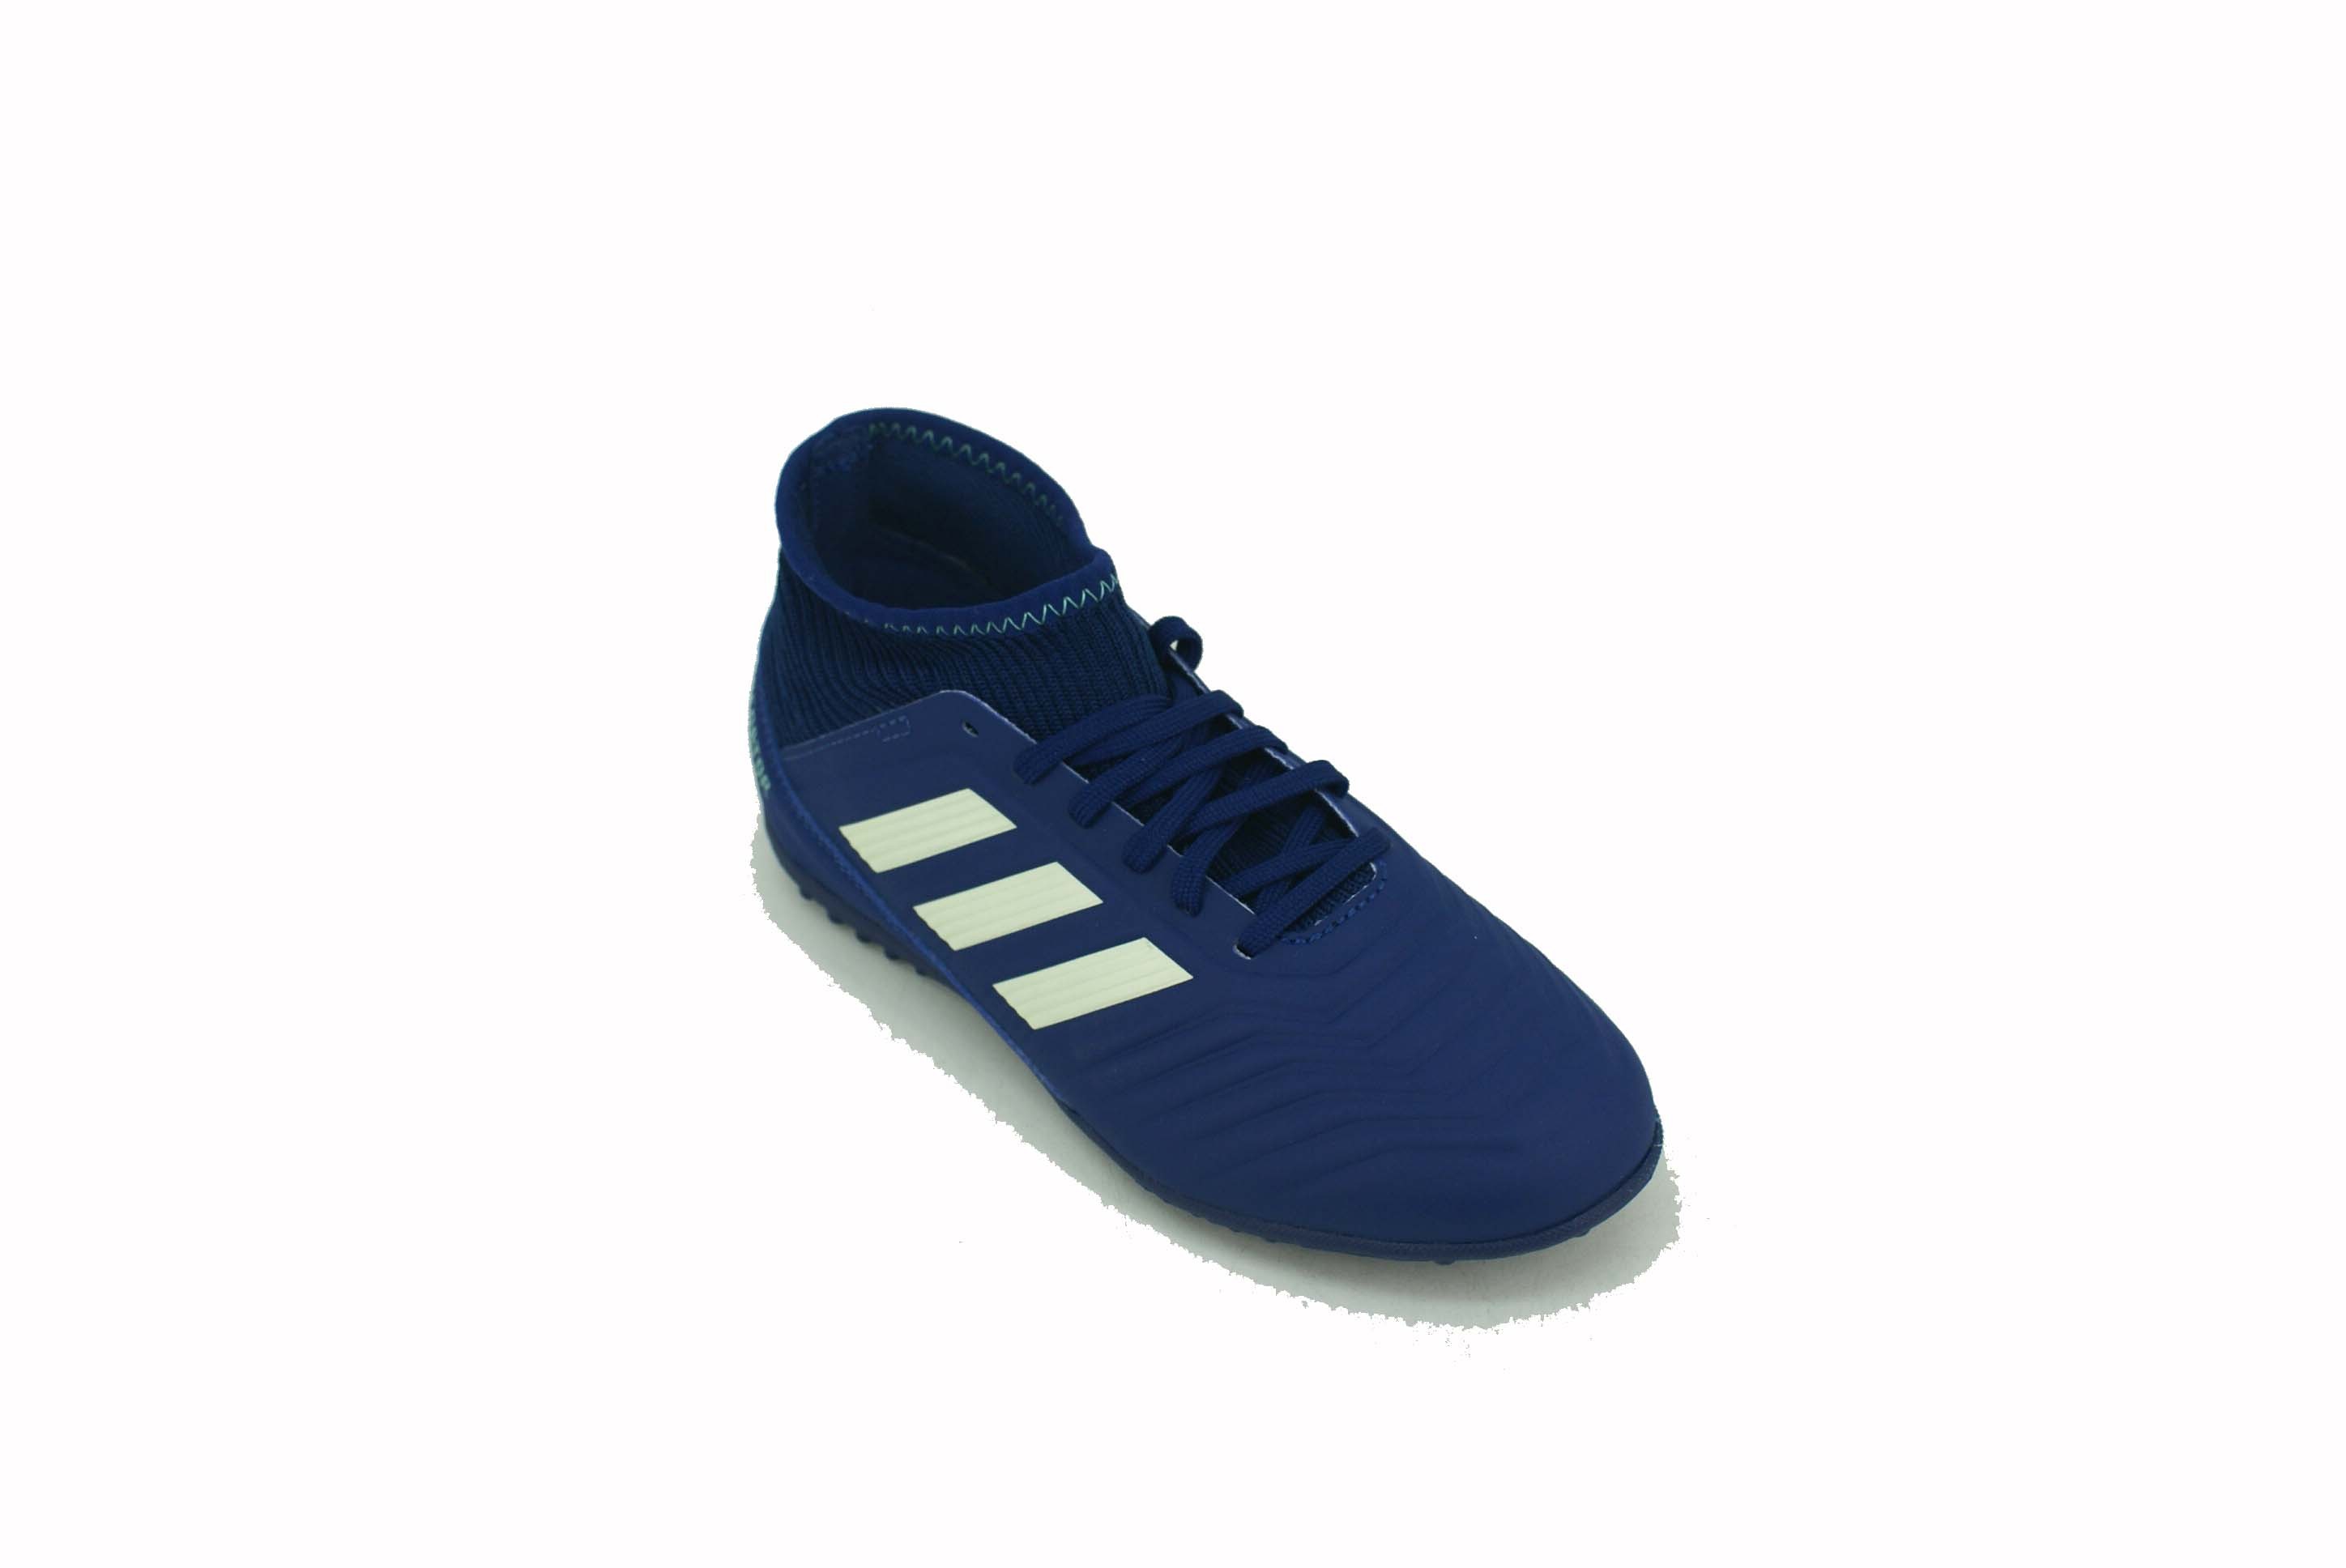 Botin Adidas Predator Tango 18.3 Azul/Blanco Niño Deporfan - Zapatillas -  E-Shop